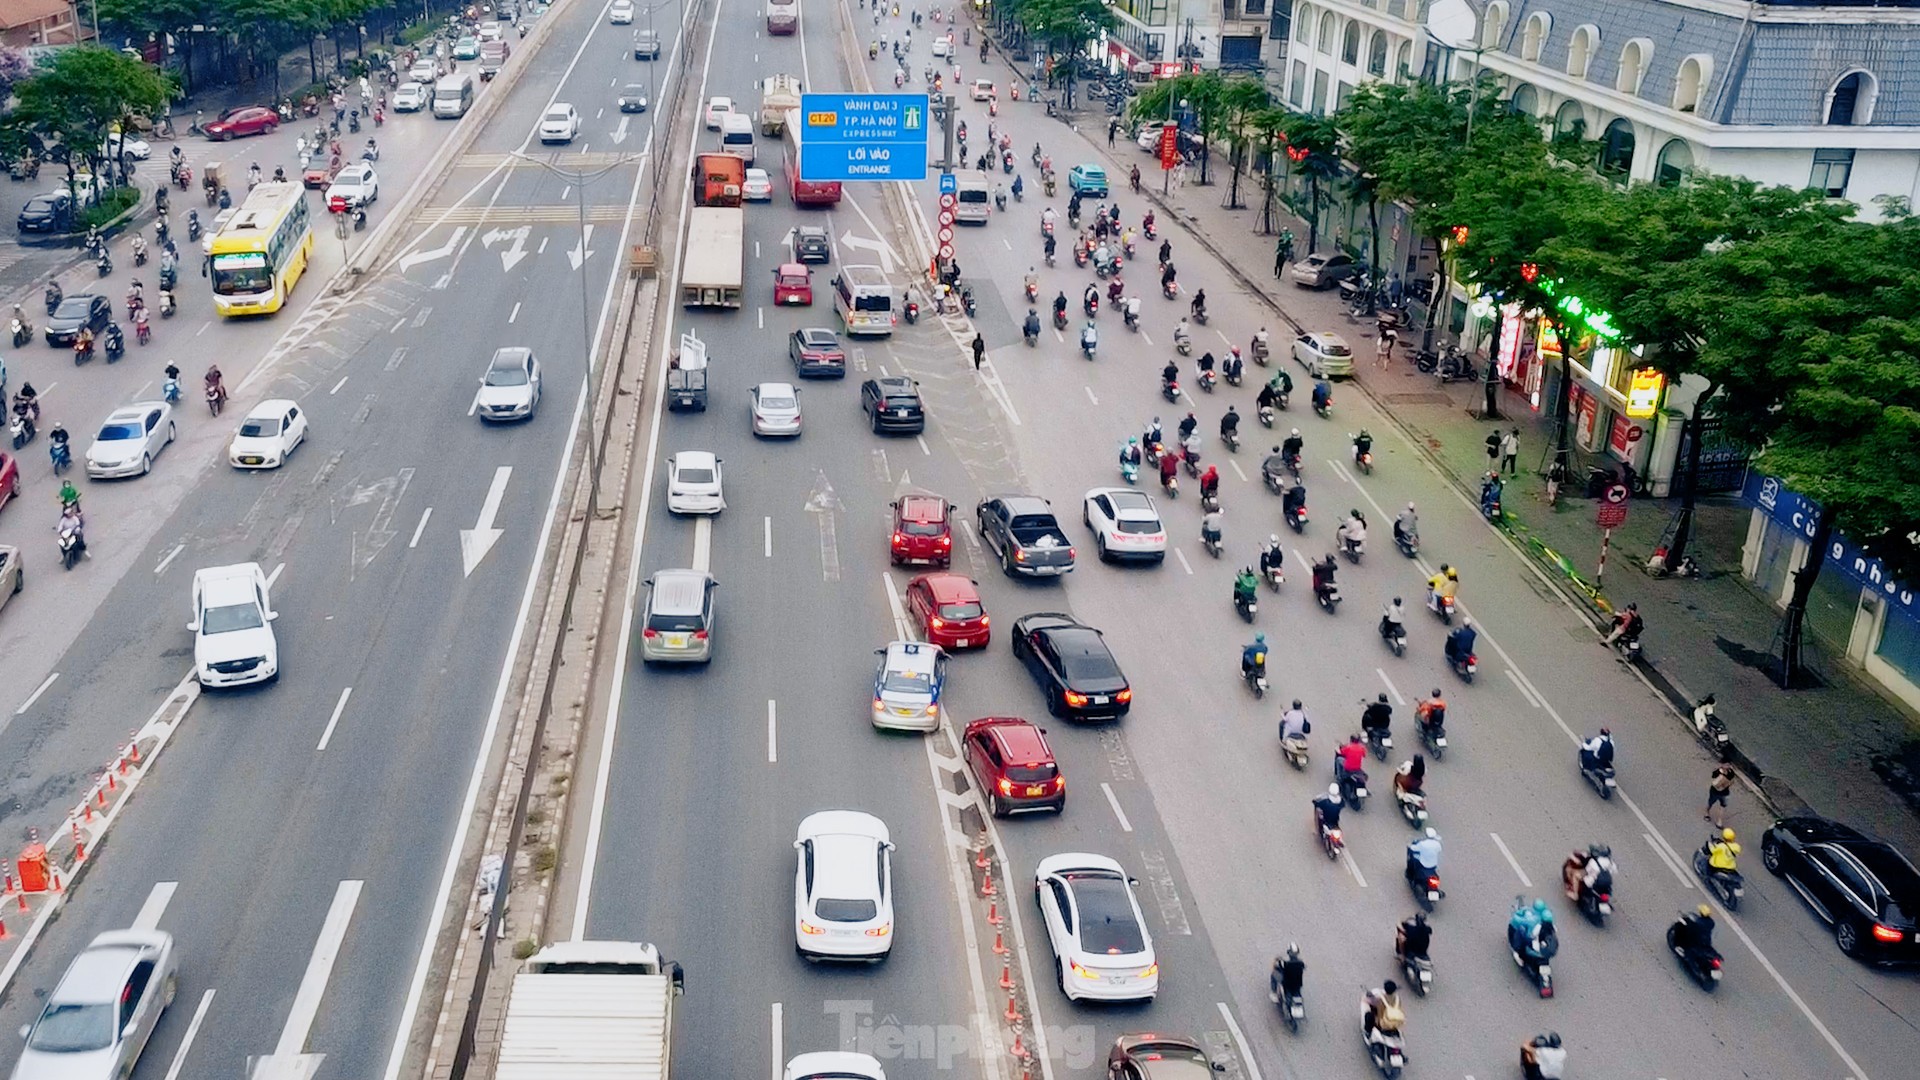 Thông xe cầu vượt Mai Dịch, vì sao giao thông vẫn hỗn loạn? ảnh 3